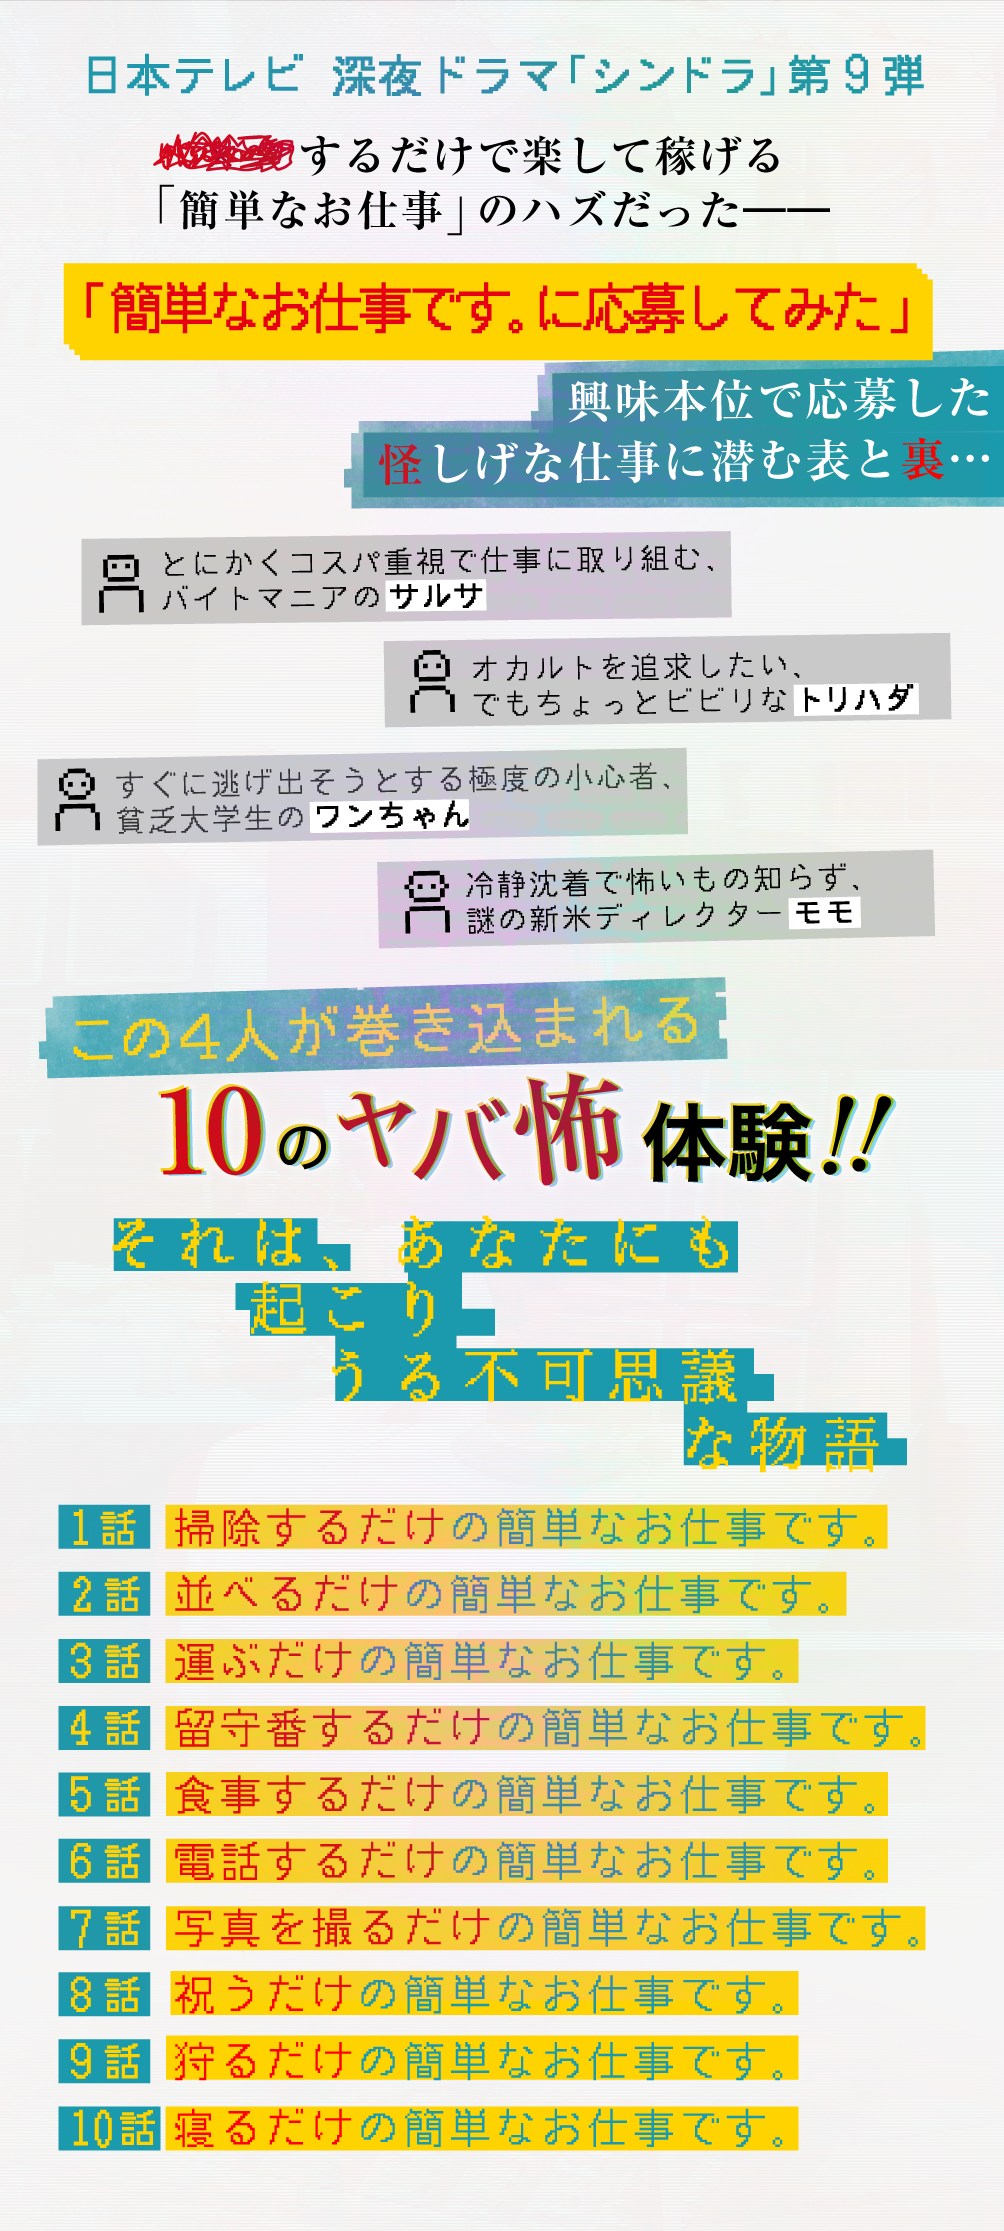 日本テレビ 深夜ドラマ「シンドラ」第9弾、××するだけで楽して稼げる「簡単なお仕事」のハズだった――簡単なお仕事です。に応募してみた